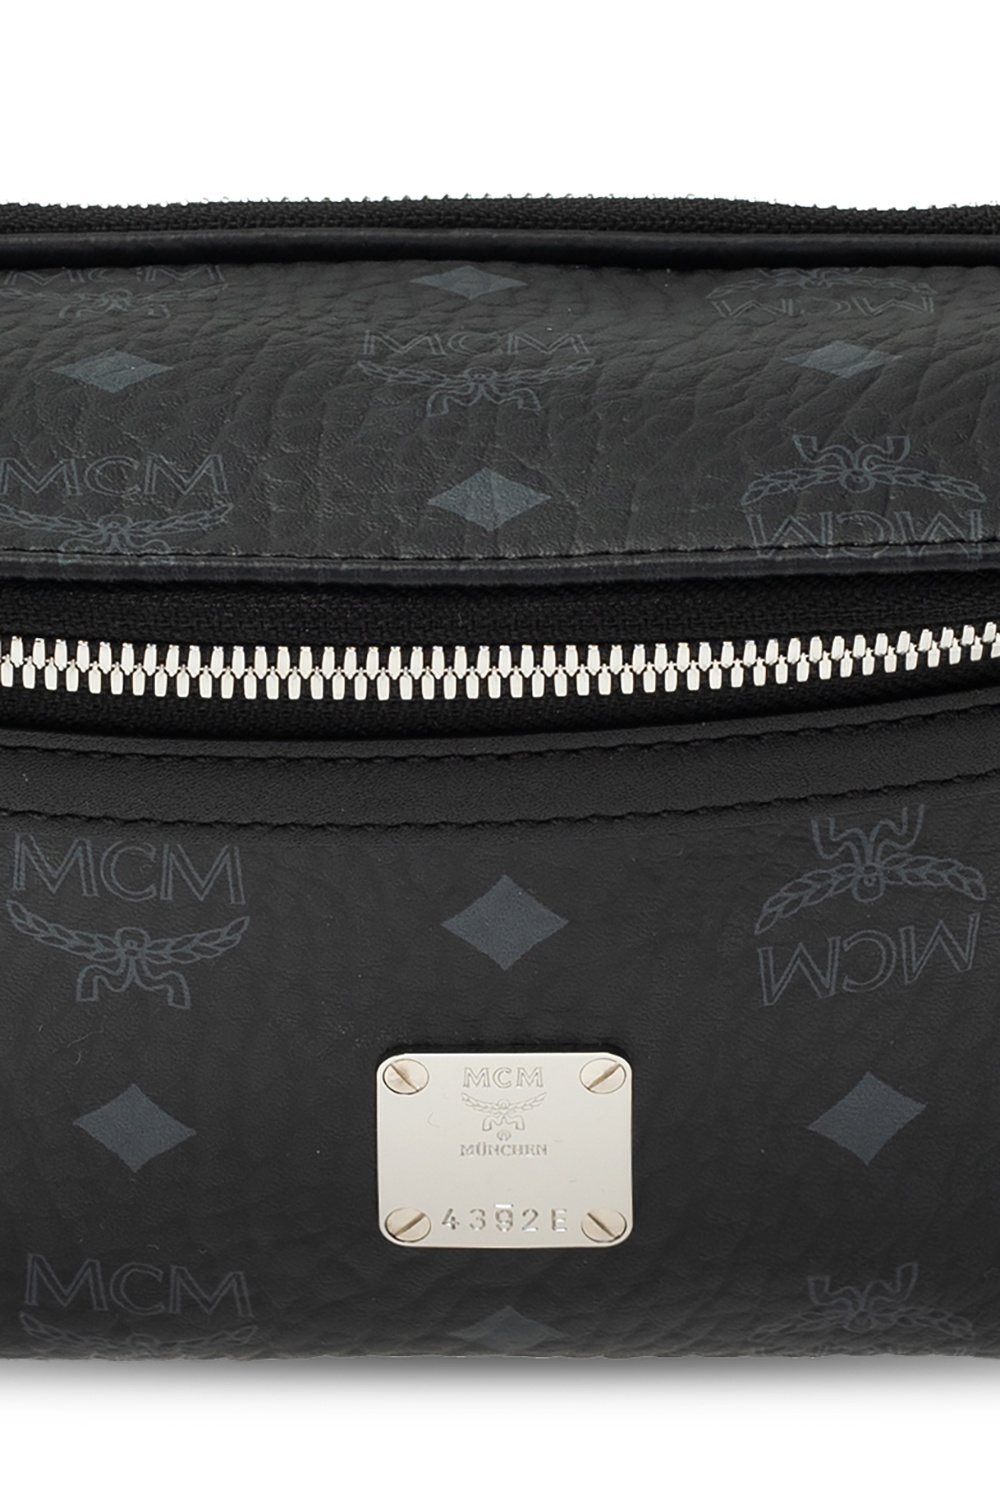 MCM Logo belt bag